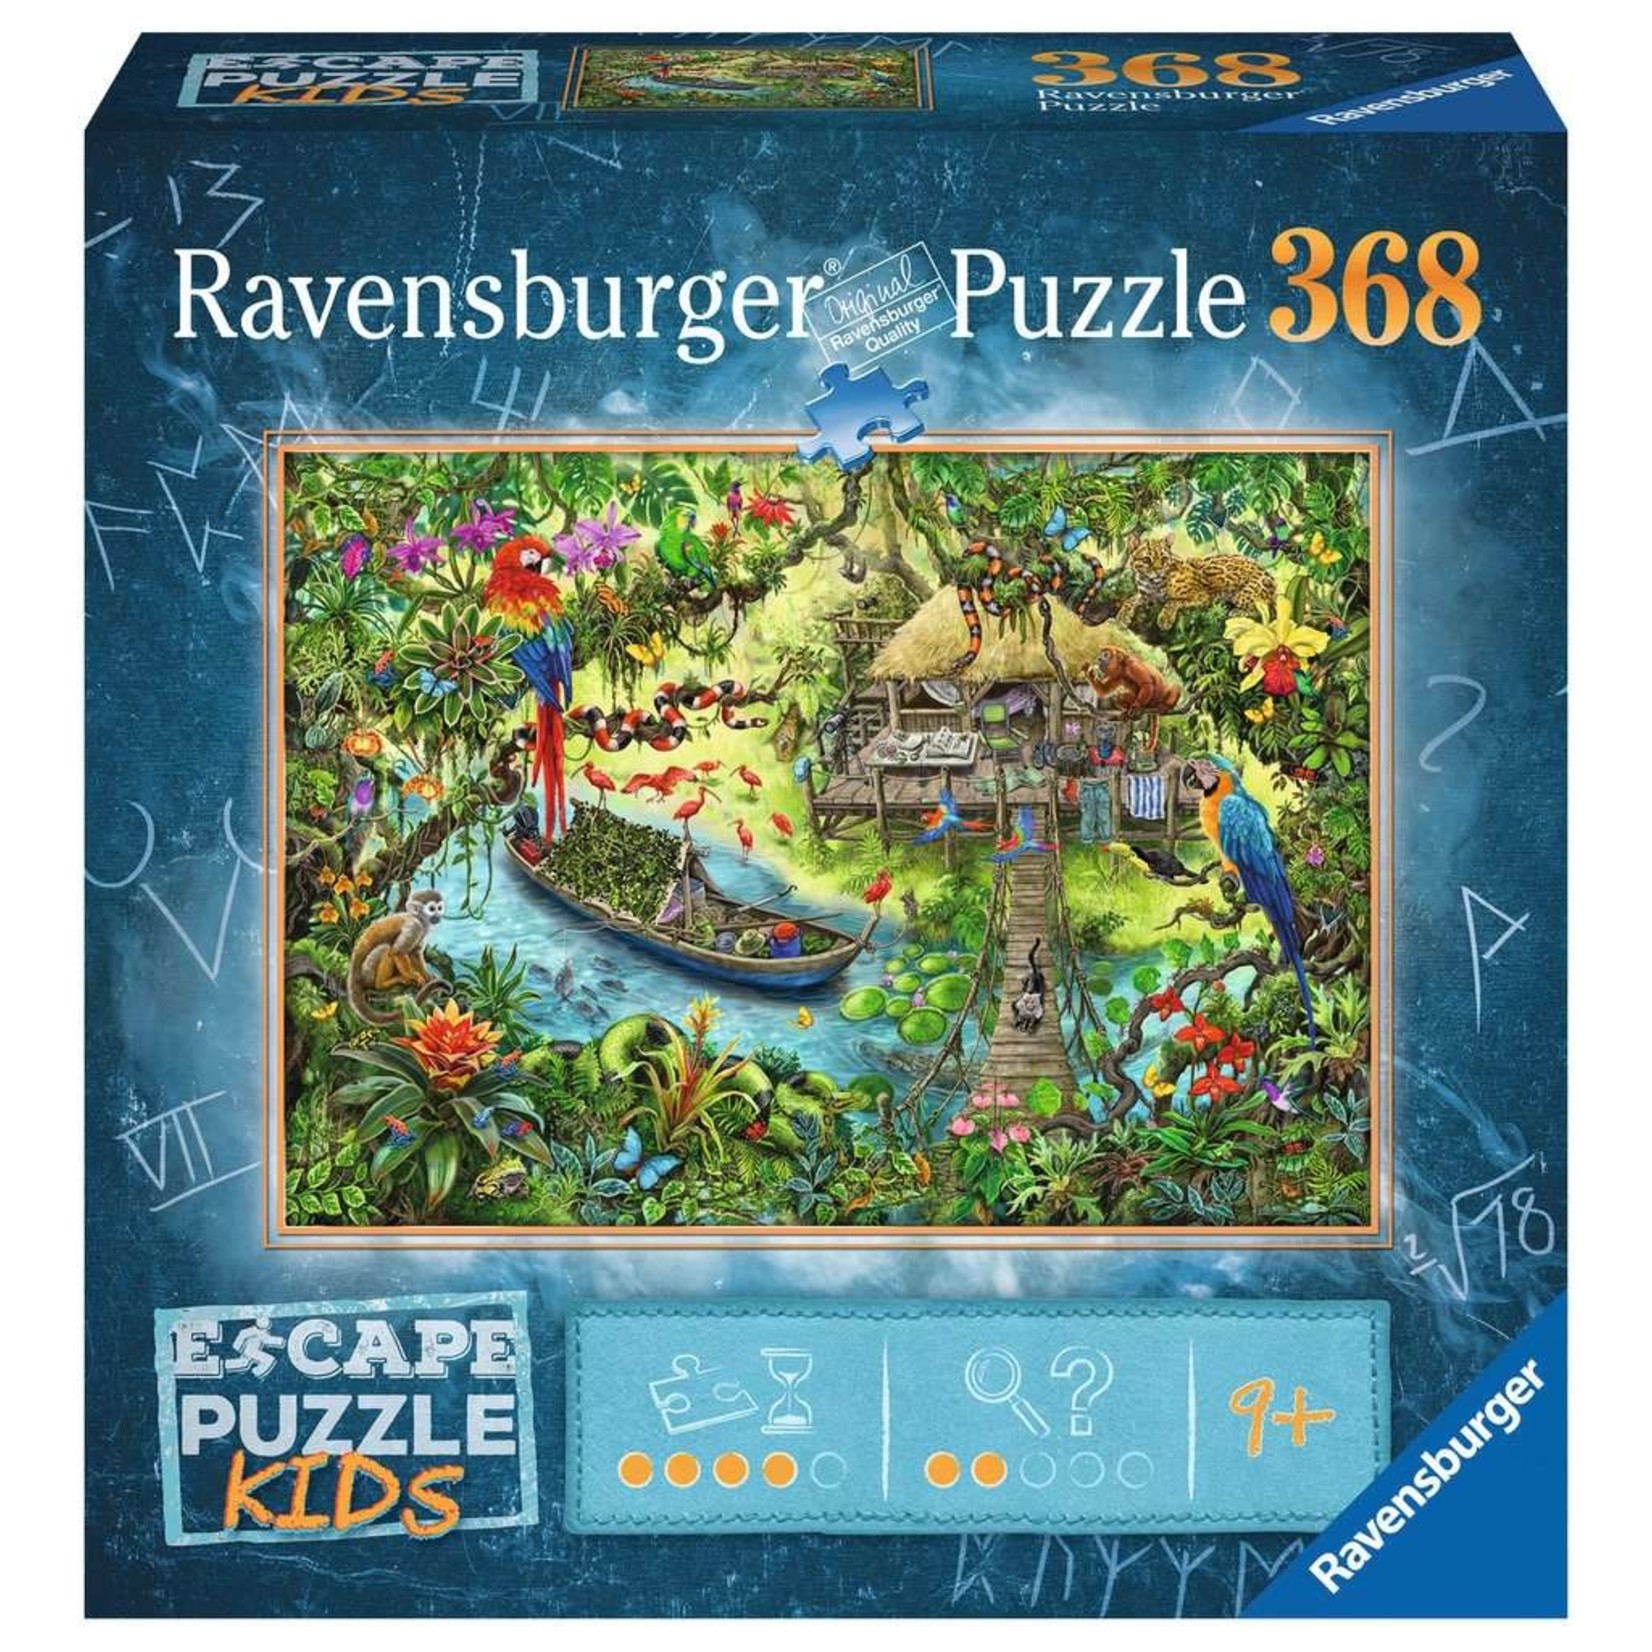 Ravensburger RAV12934 Escape Puzzle Kids Jungle Journey (Puzzle368)